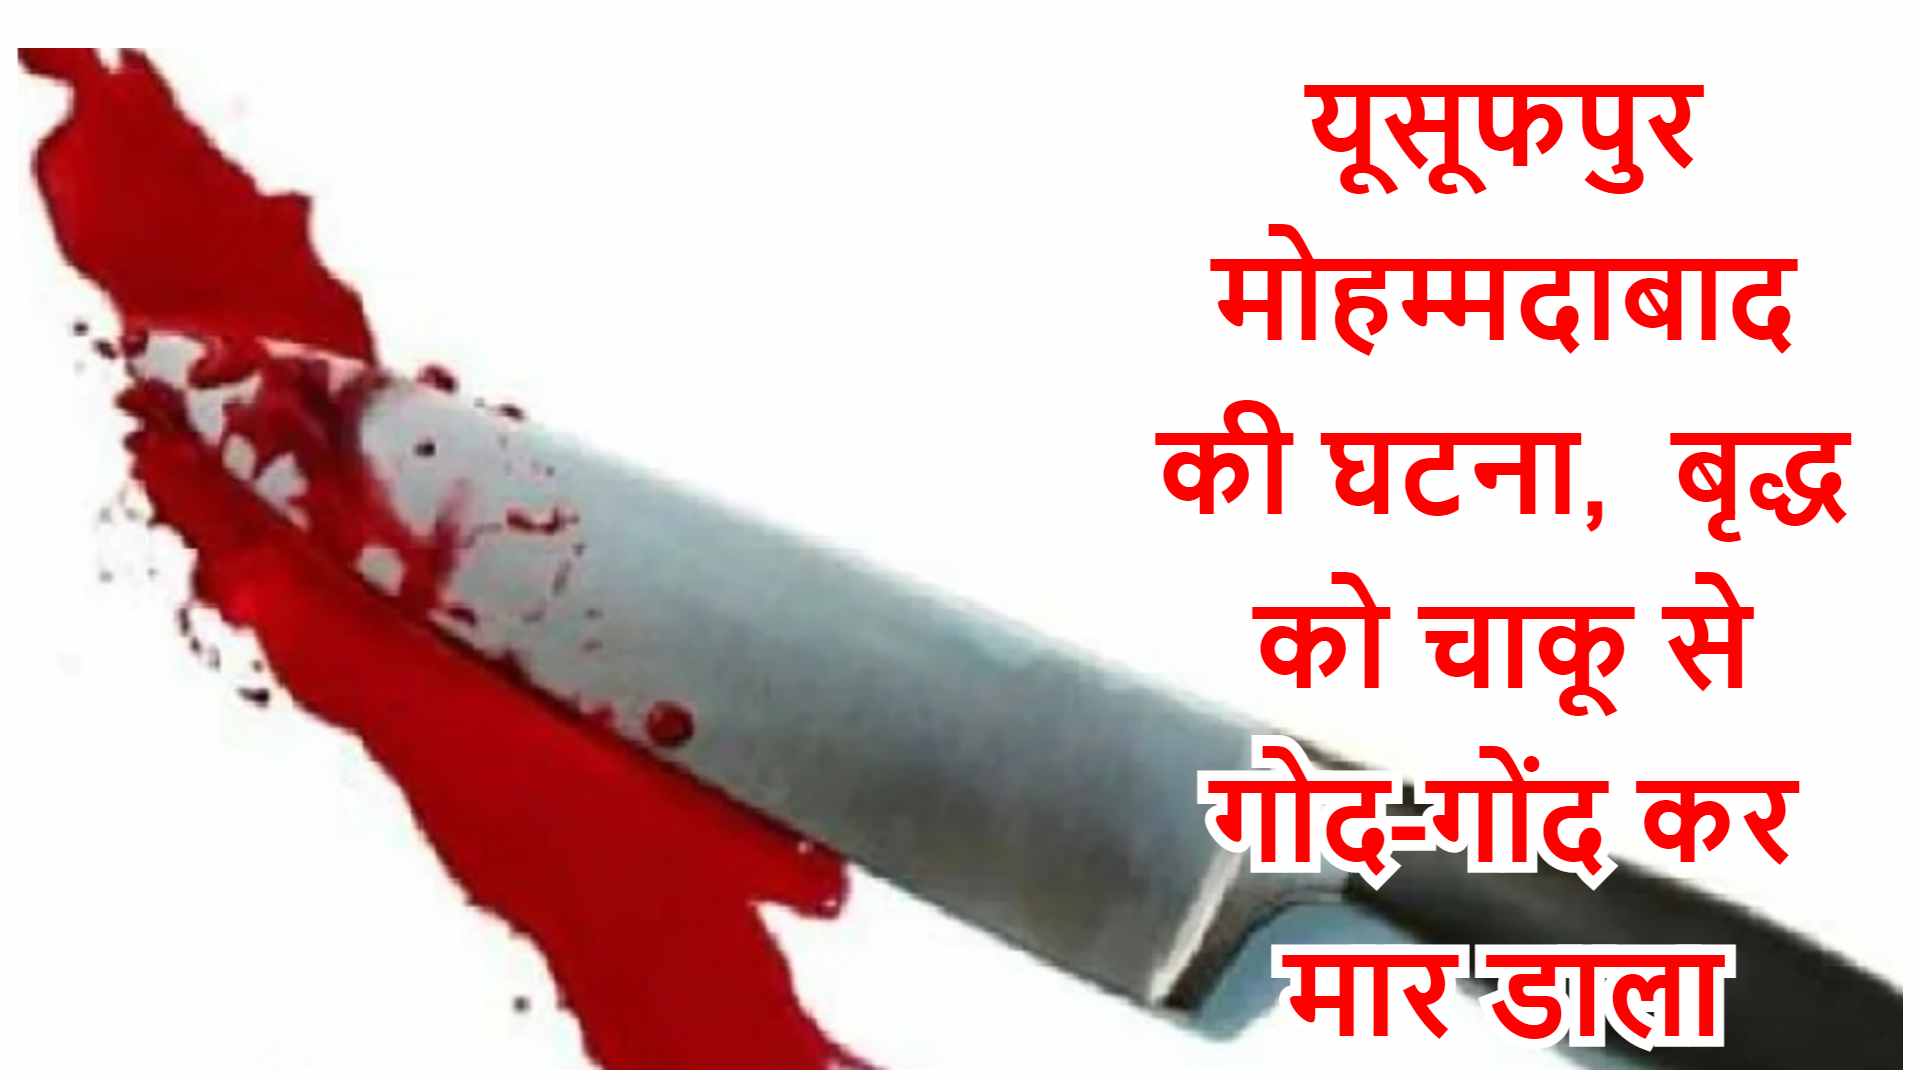 यूसूफपुर मोहम्मदाबाद की घटना, बृद्ध को चाकू से गोद-गोंद कर मार डाला